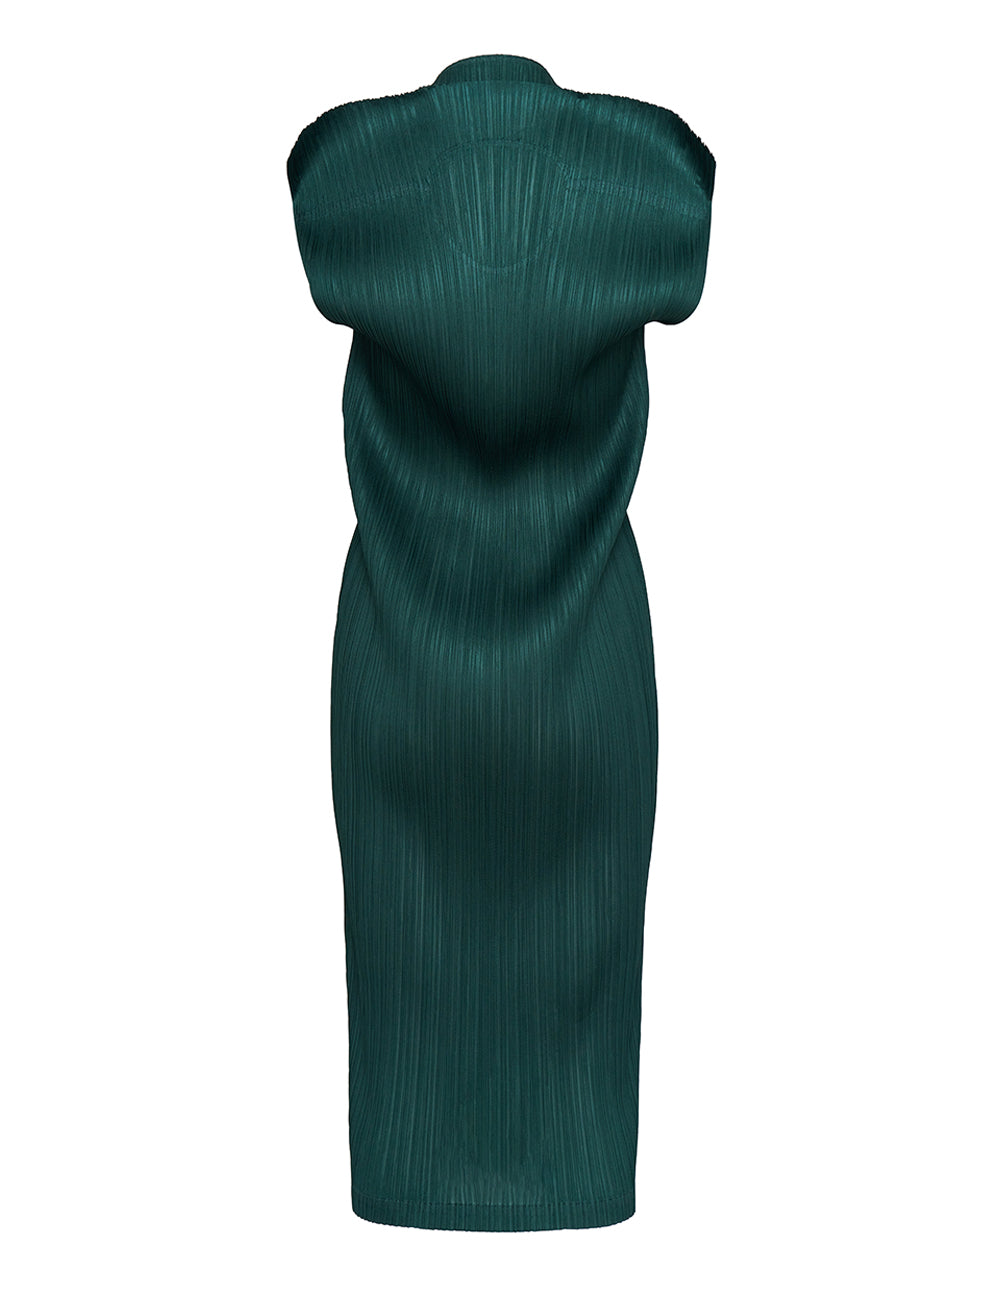 Artichoke Dress